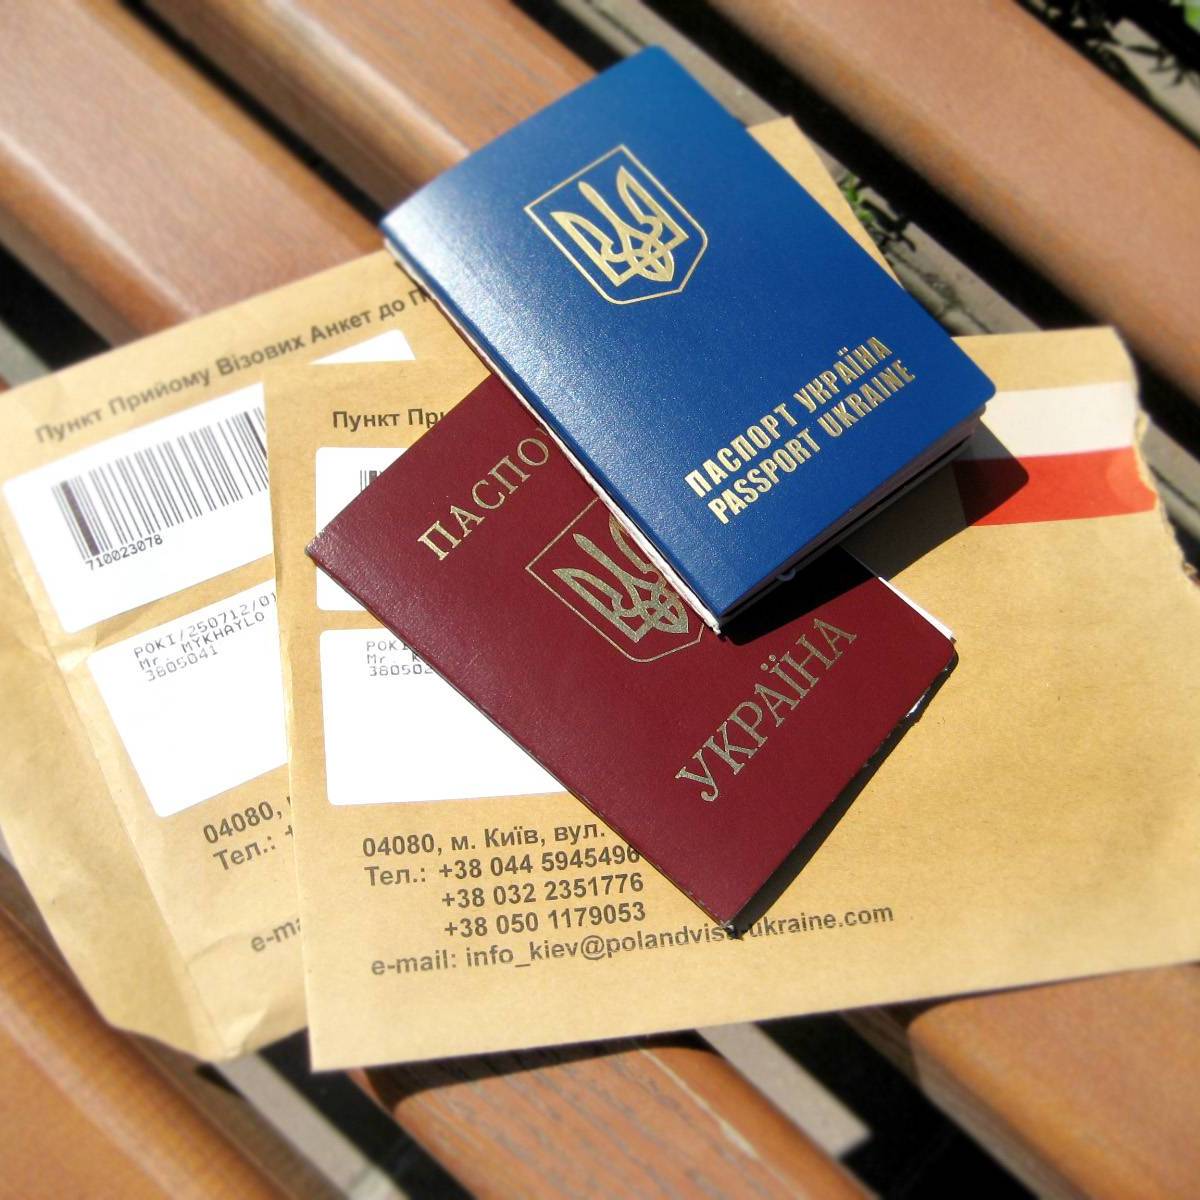 Украина открывает визовые центры по всему миру, 8 из них заработают в РФ